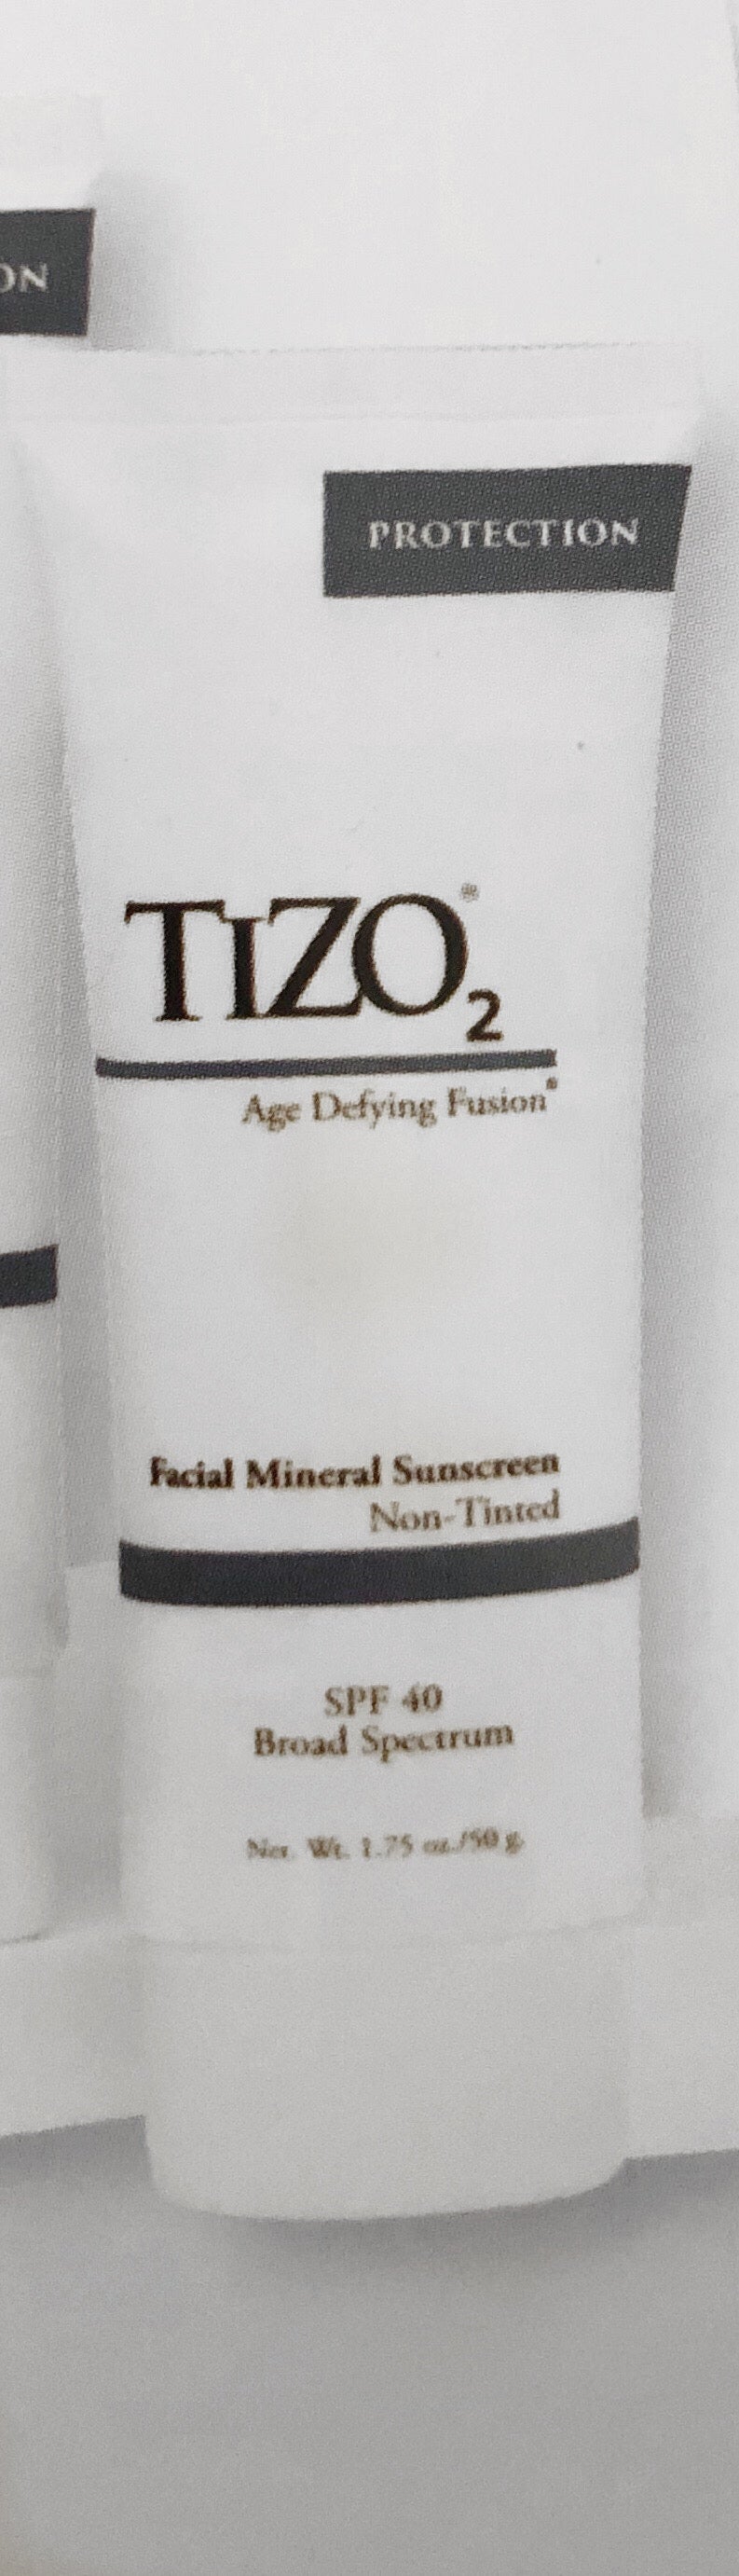 Tizo 2 Facial Sunscreen